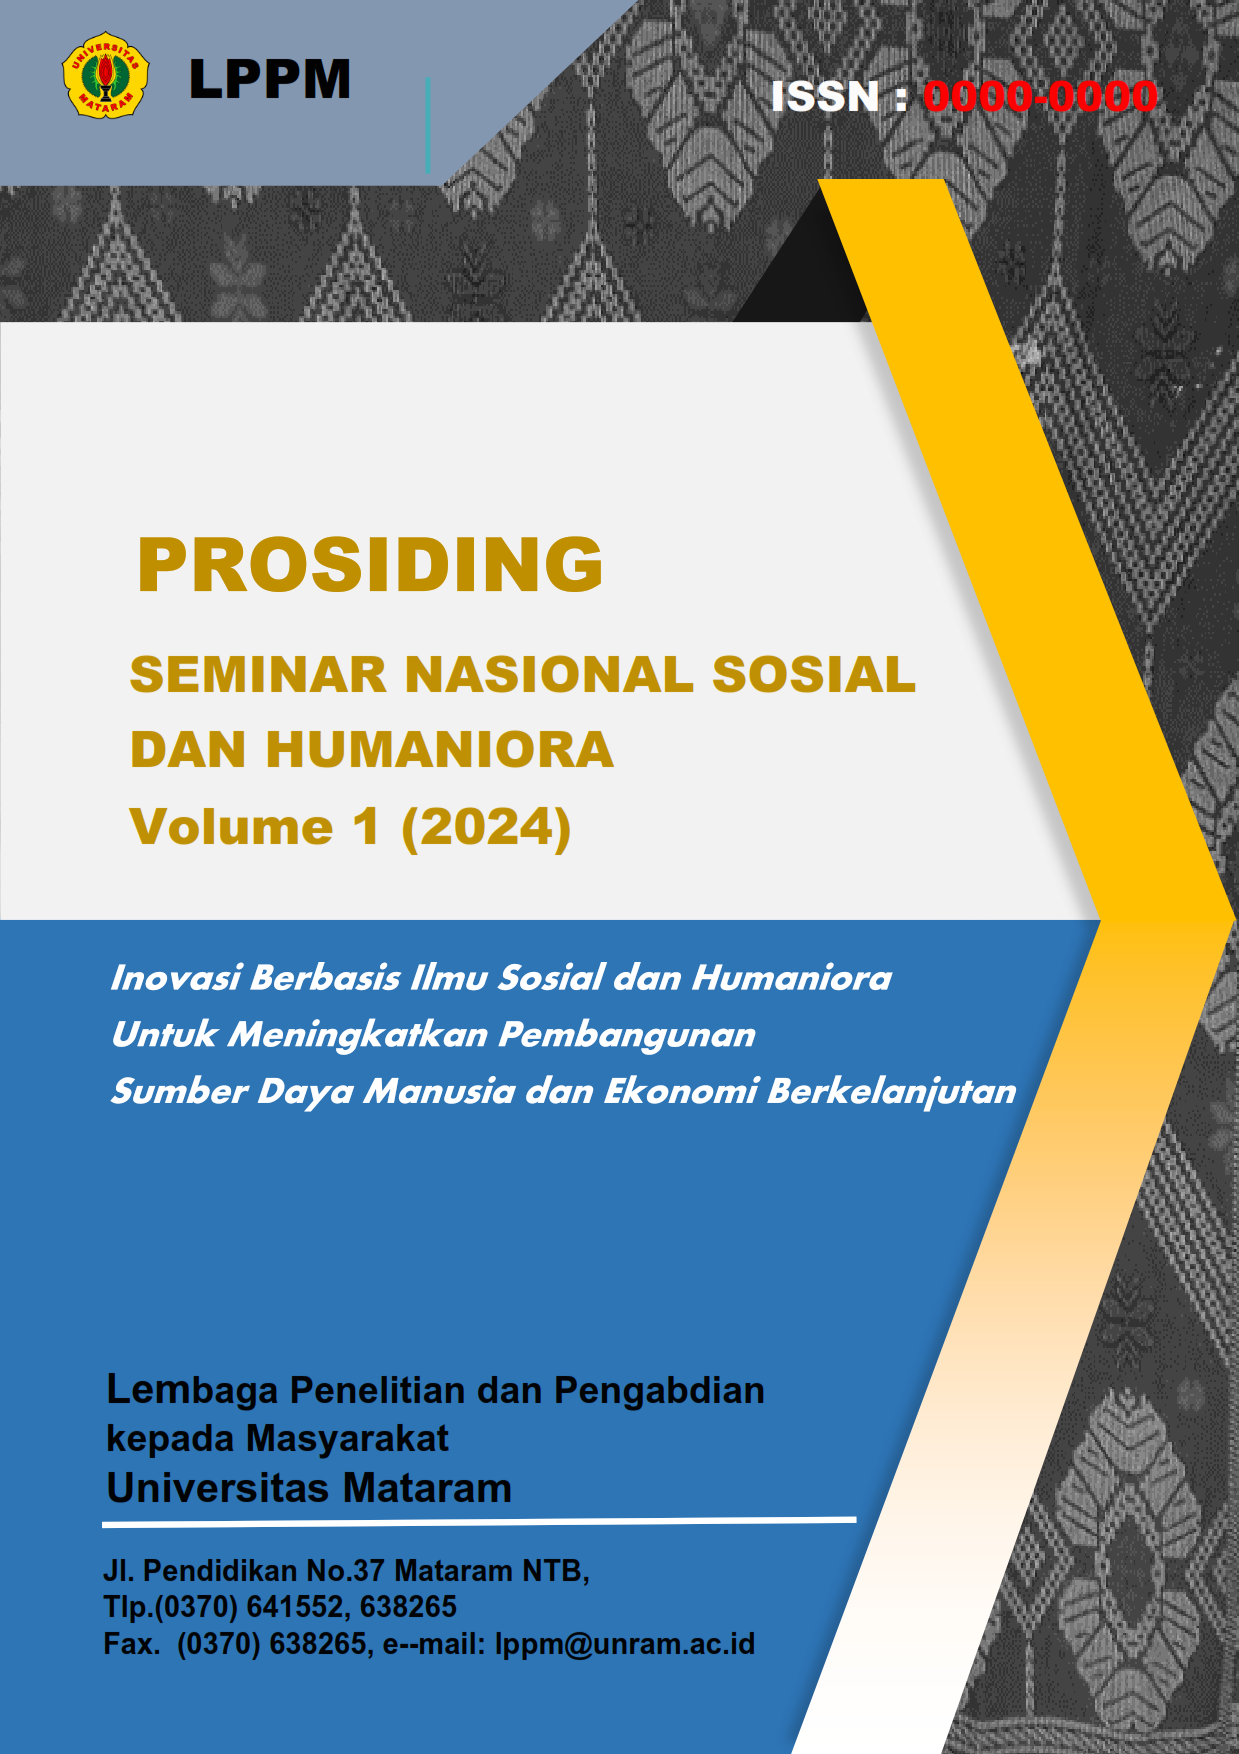 					Lihat Vol 1 (2024): Prosiding Seminar Nasional Sosial dan Humaniora
				